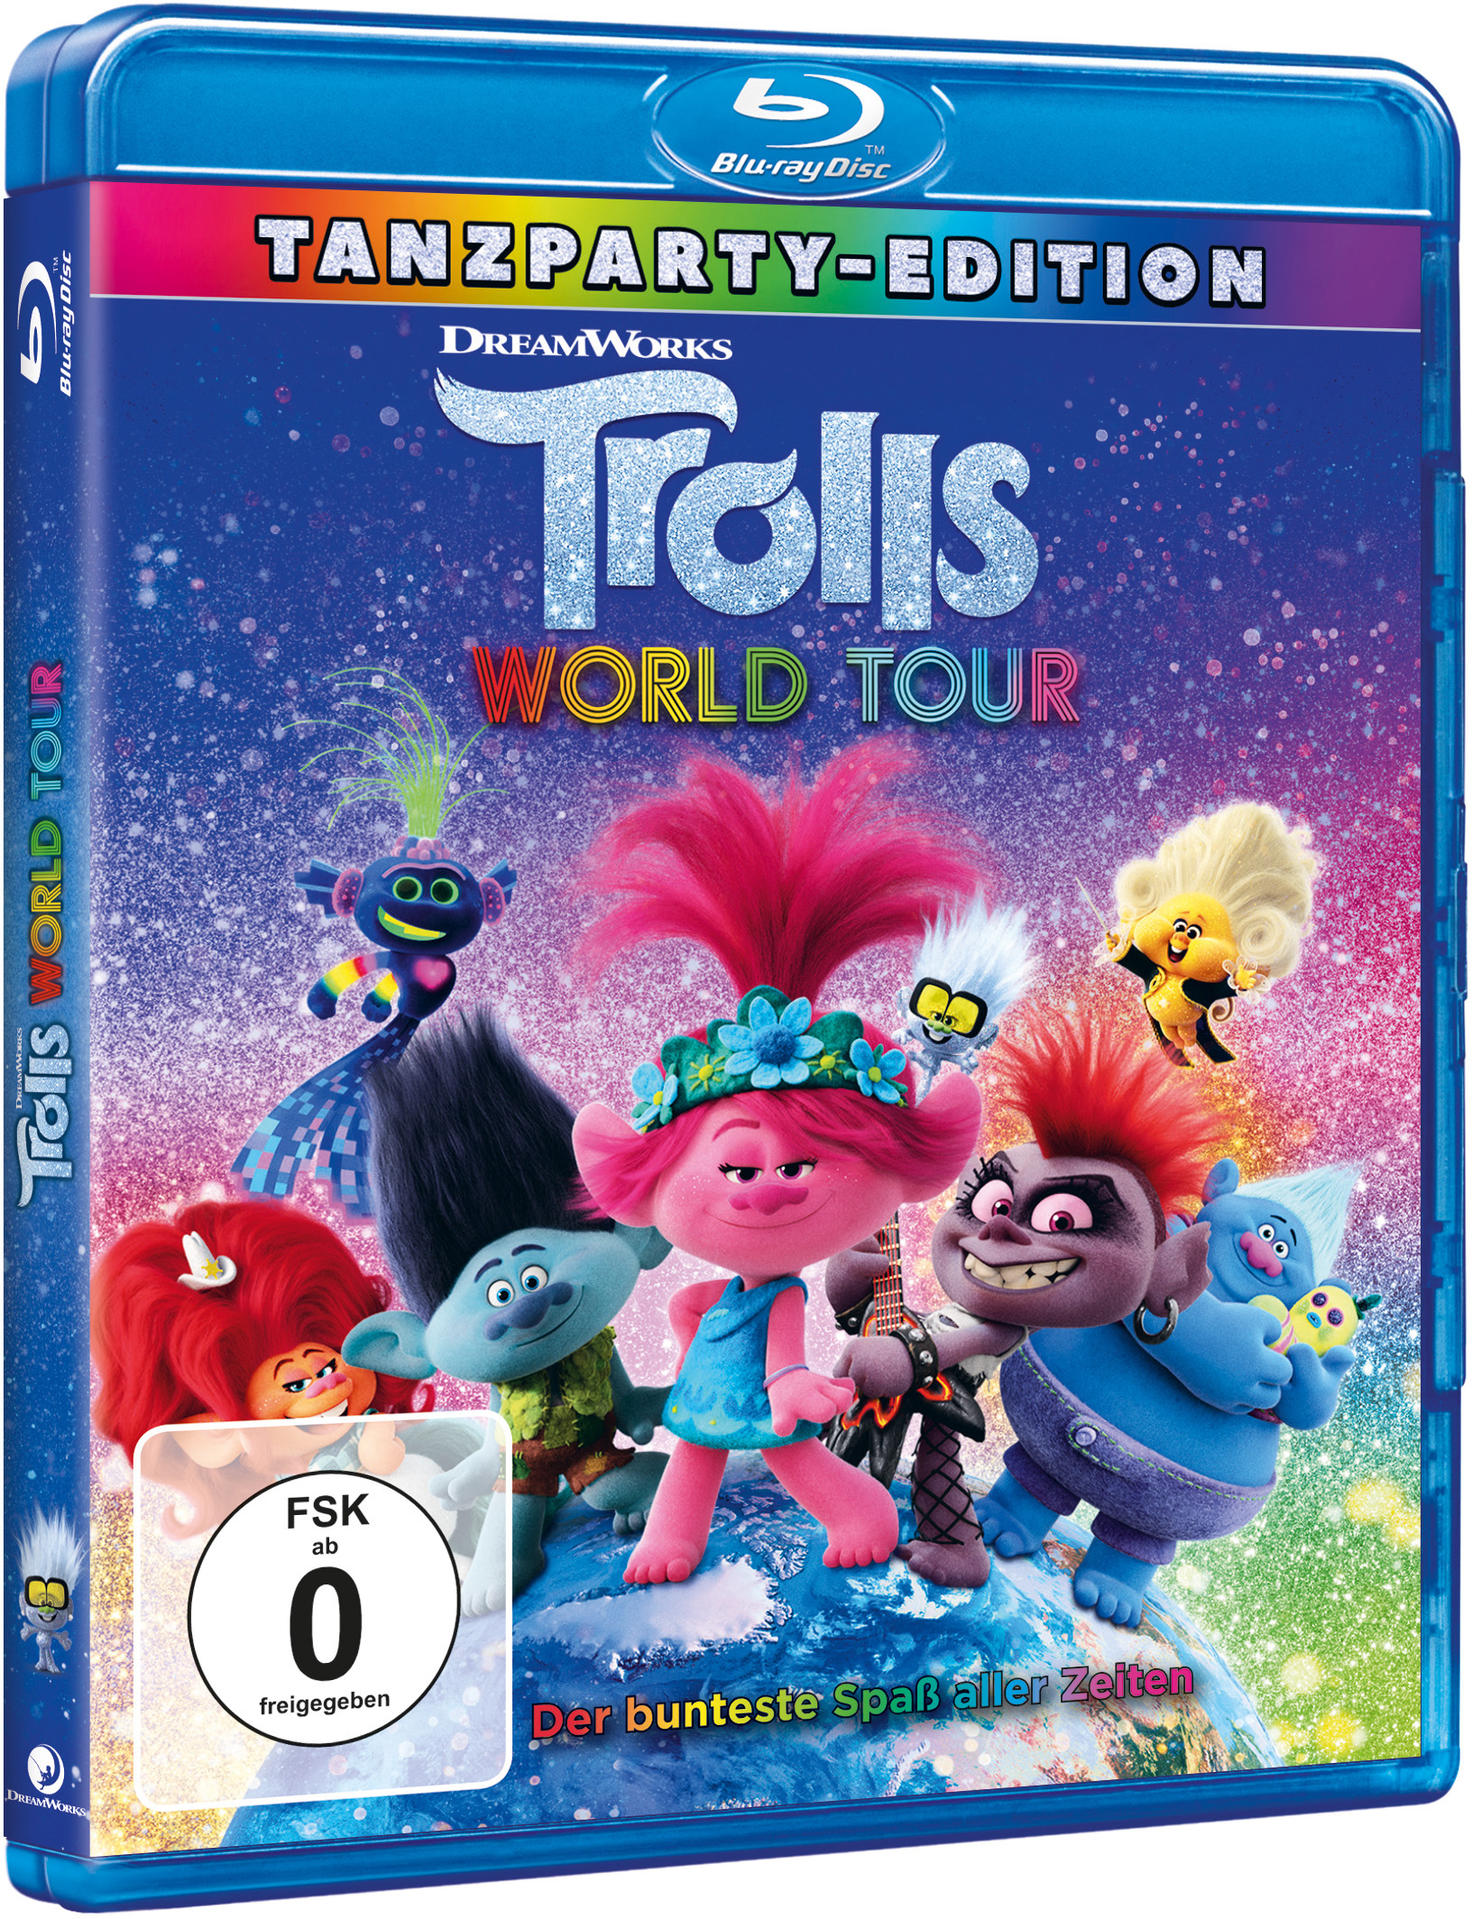 Tour Trolls 2 Trolls World Blu-ray -